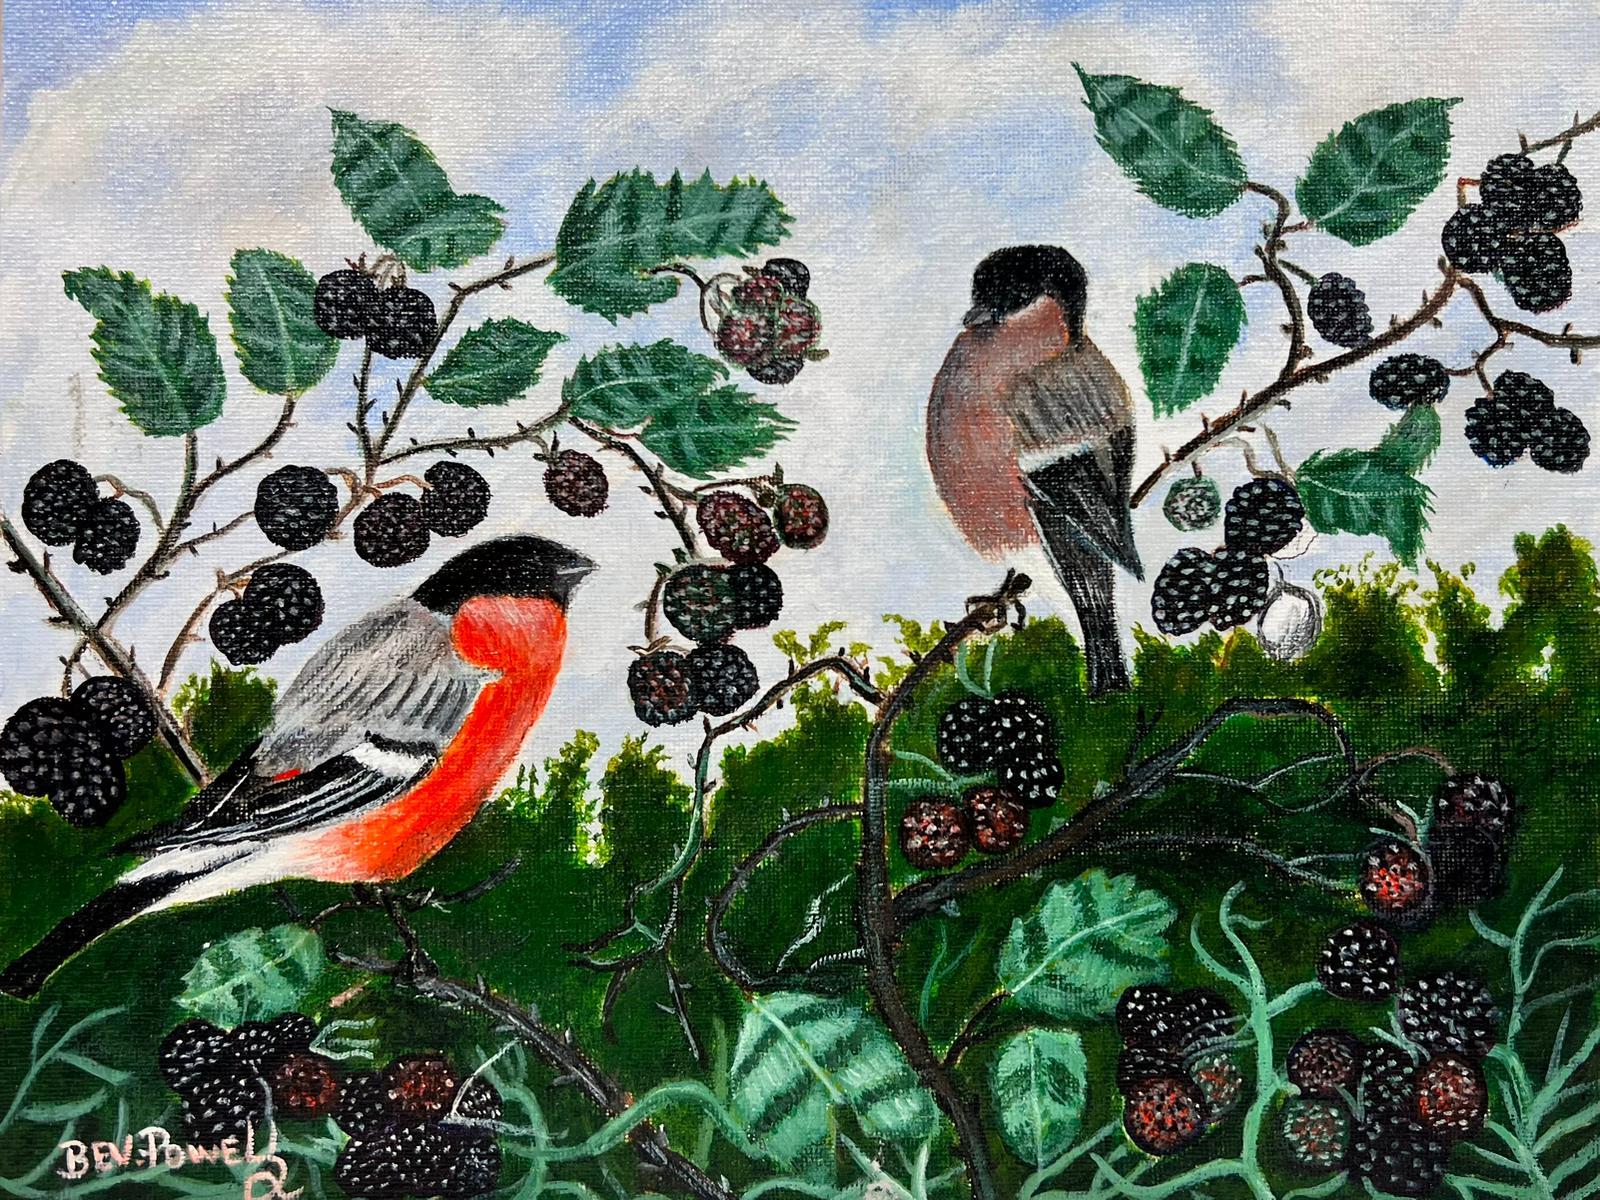 Peinture acrylique contemporaine The Birds Amongst the Blackberries (Les oiseaux parmi les mûres)